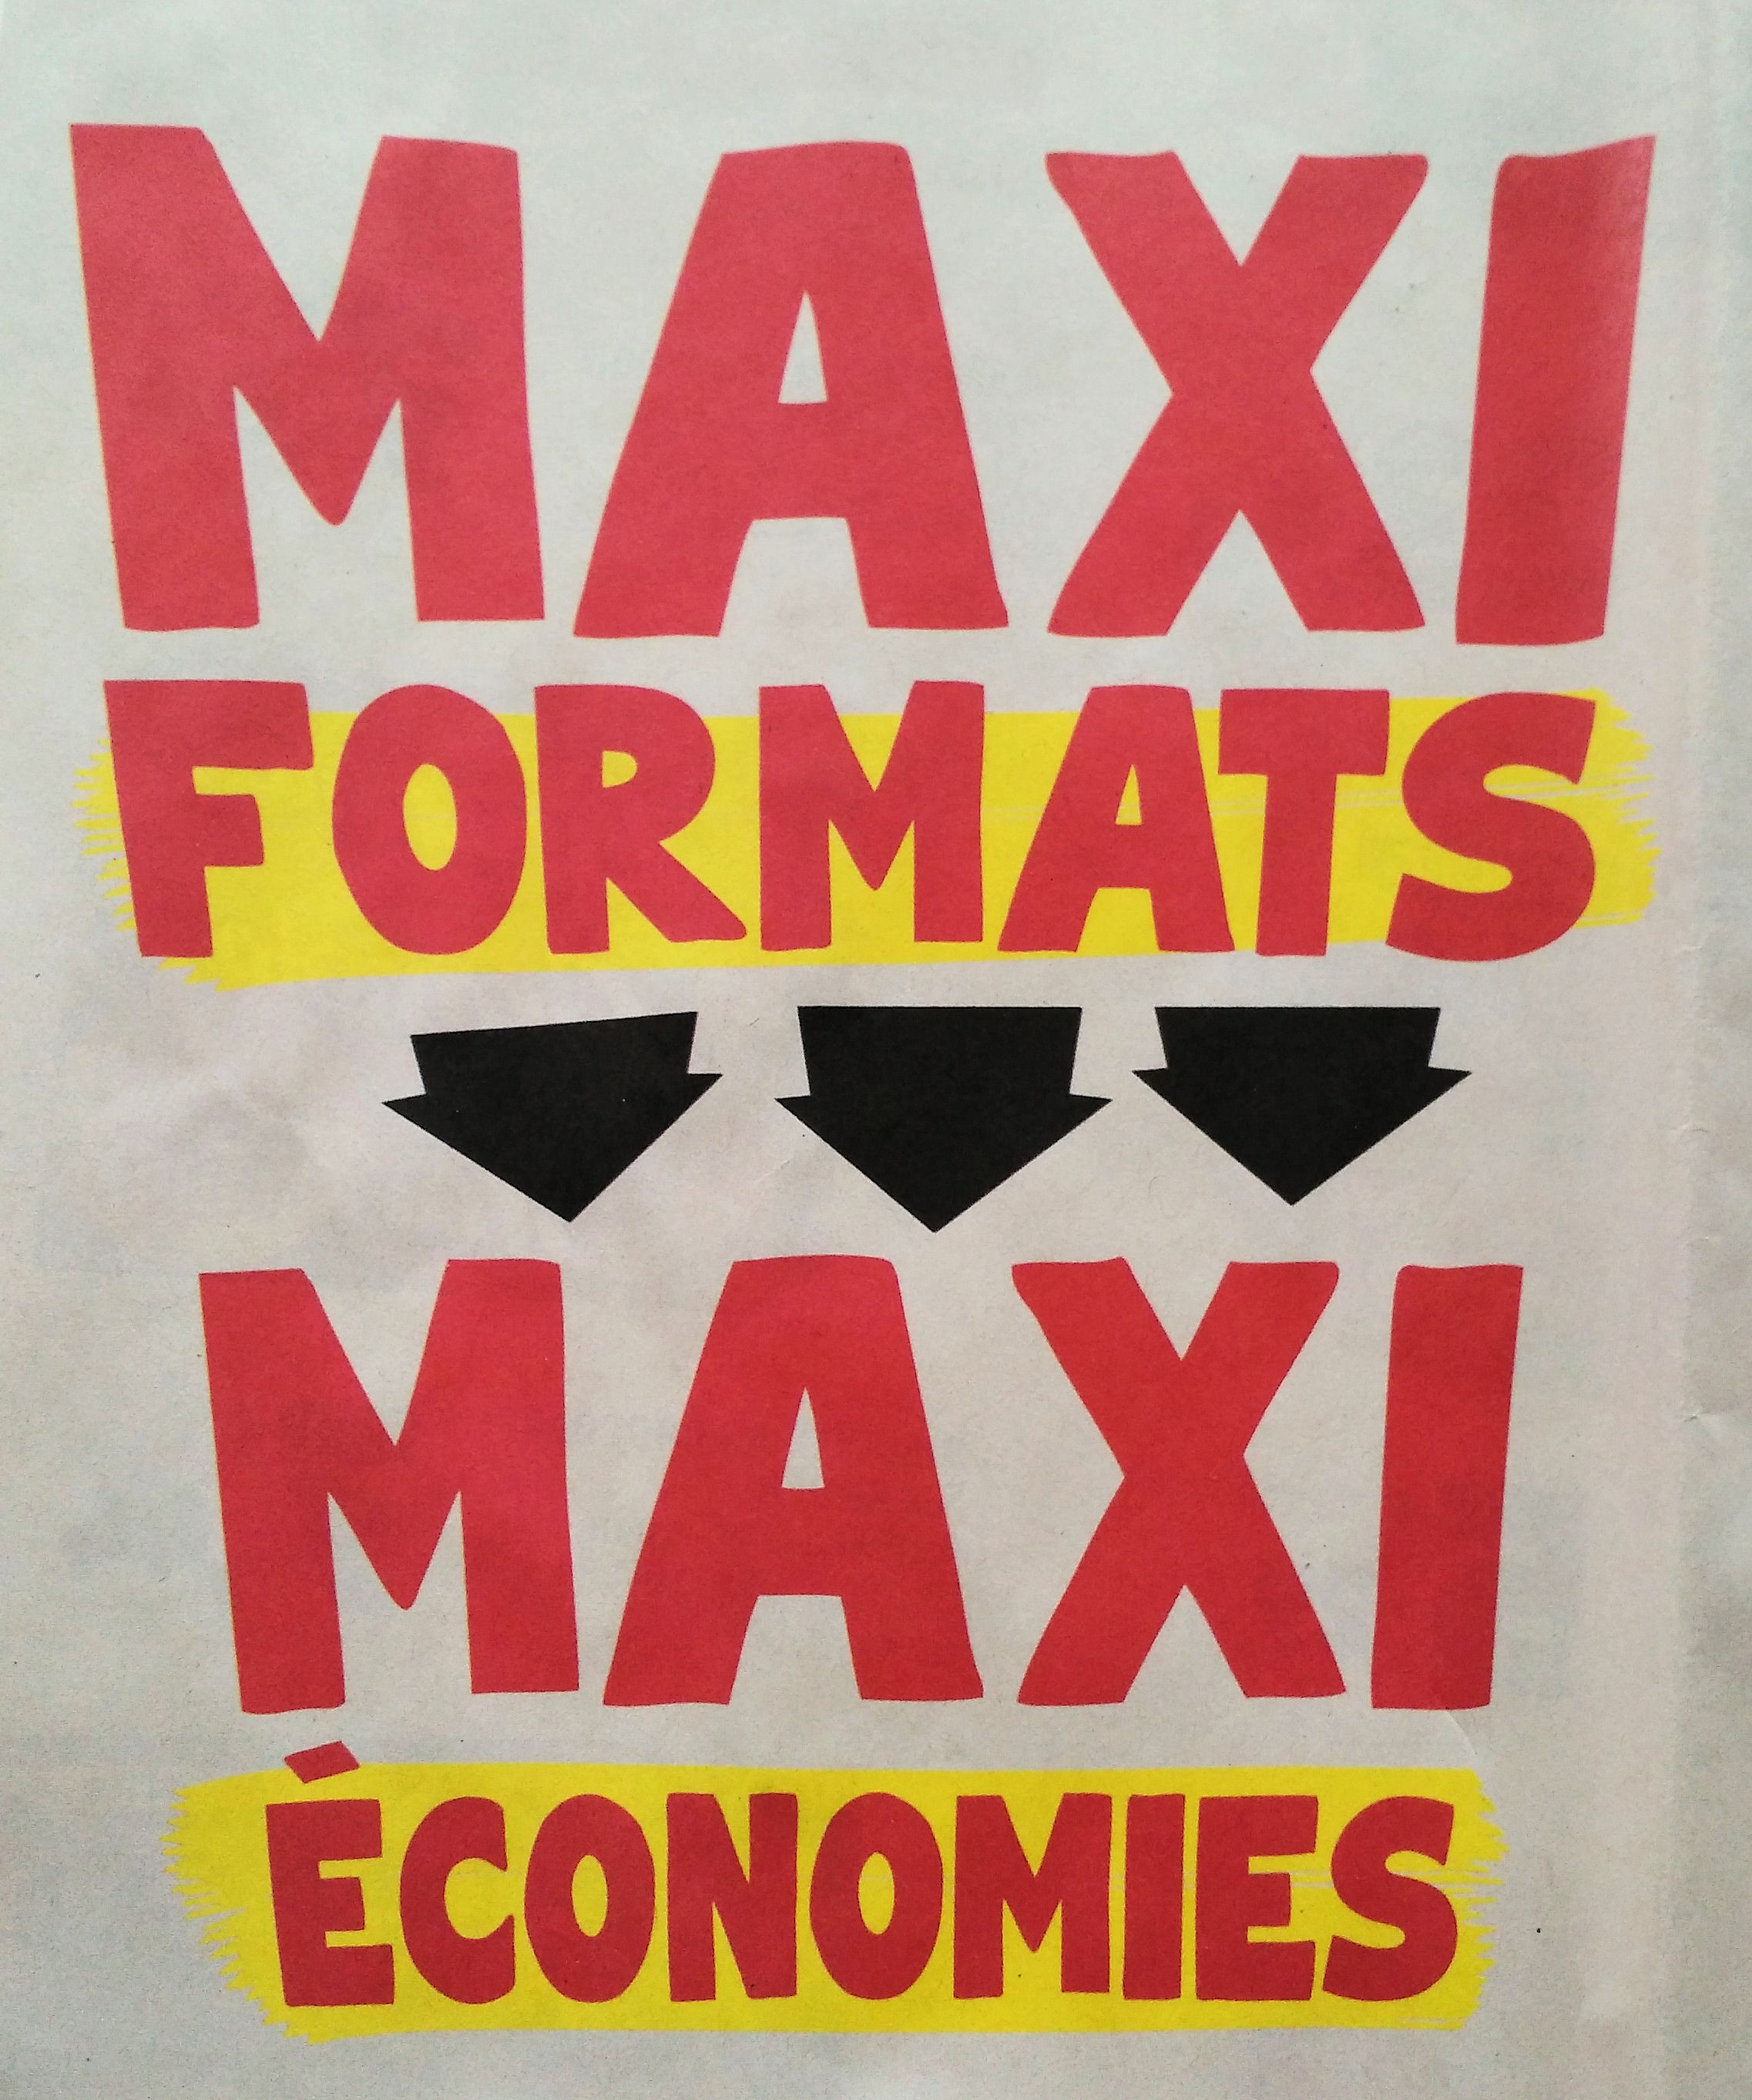 maxi formats maxi economies